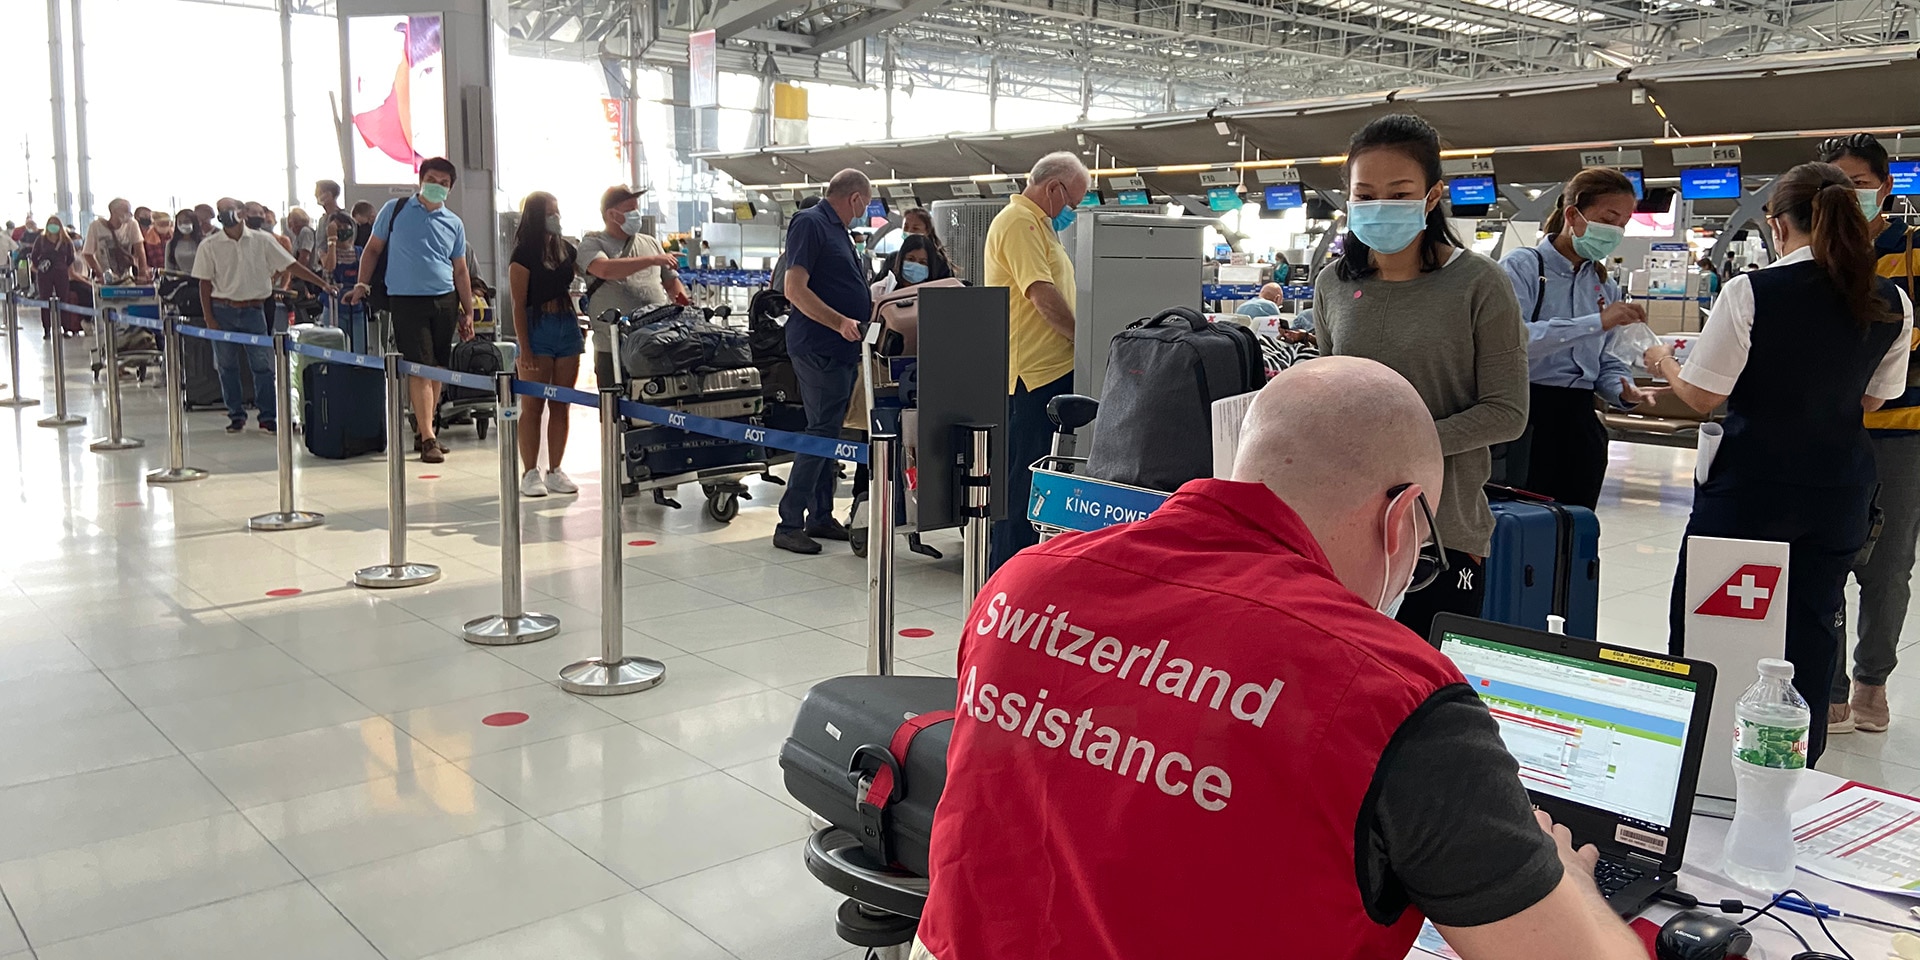 Il personale dell'Ambasciata svizzera all'aeroporto di Bangkok assiste i passeggeri che hanno effettuato il check-in per il volo da Bangkok a Zurigo.